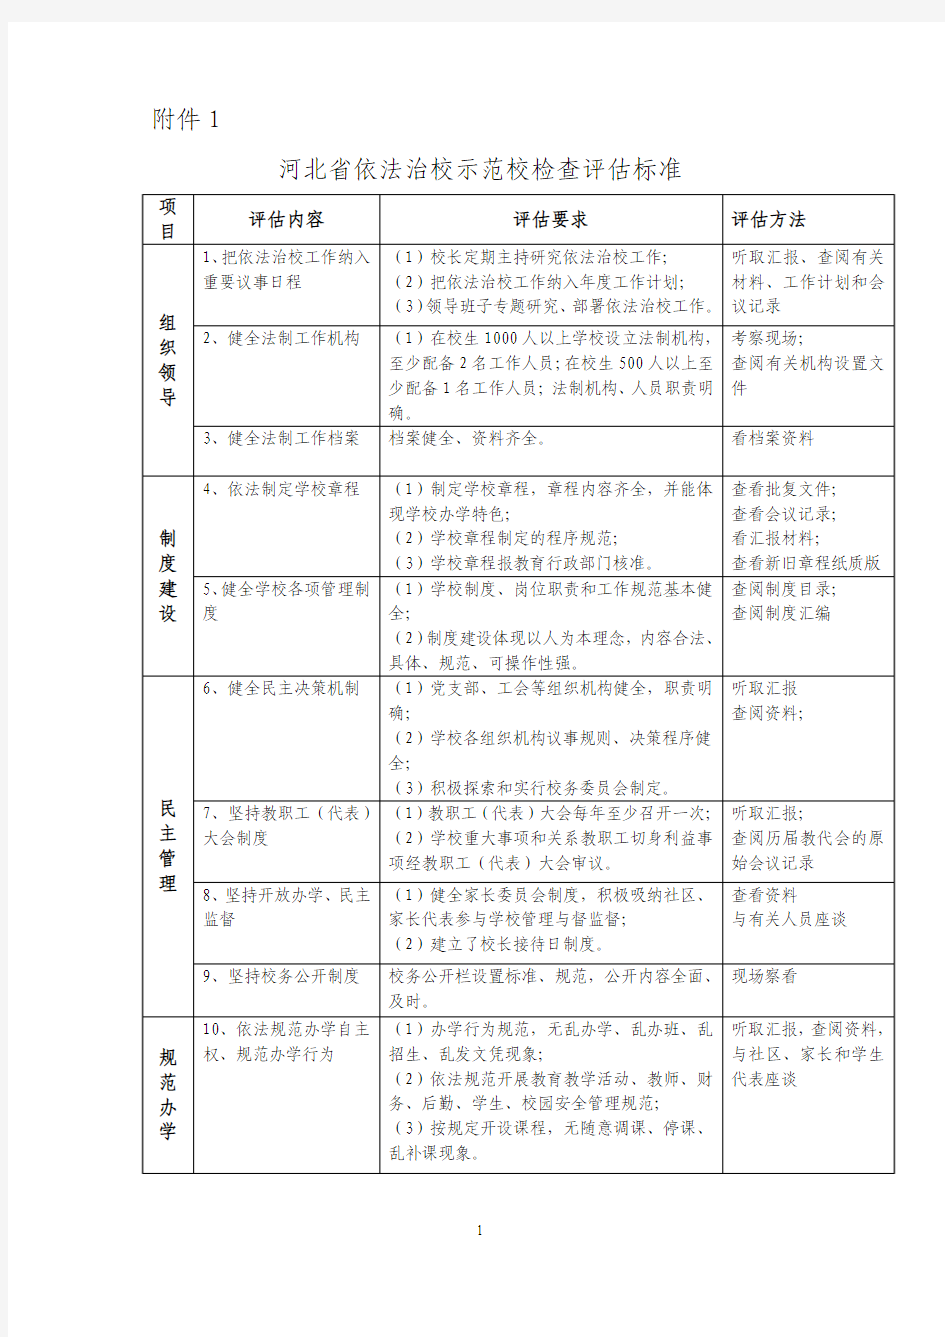 河北省依法治校示范校检查评估标准